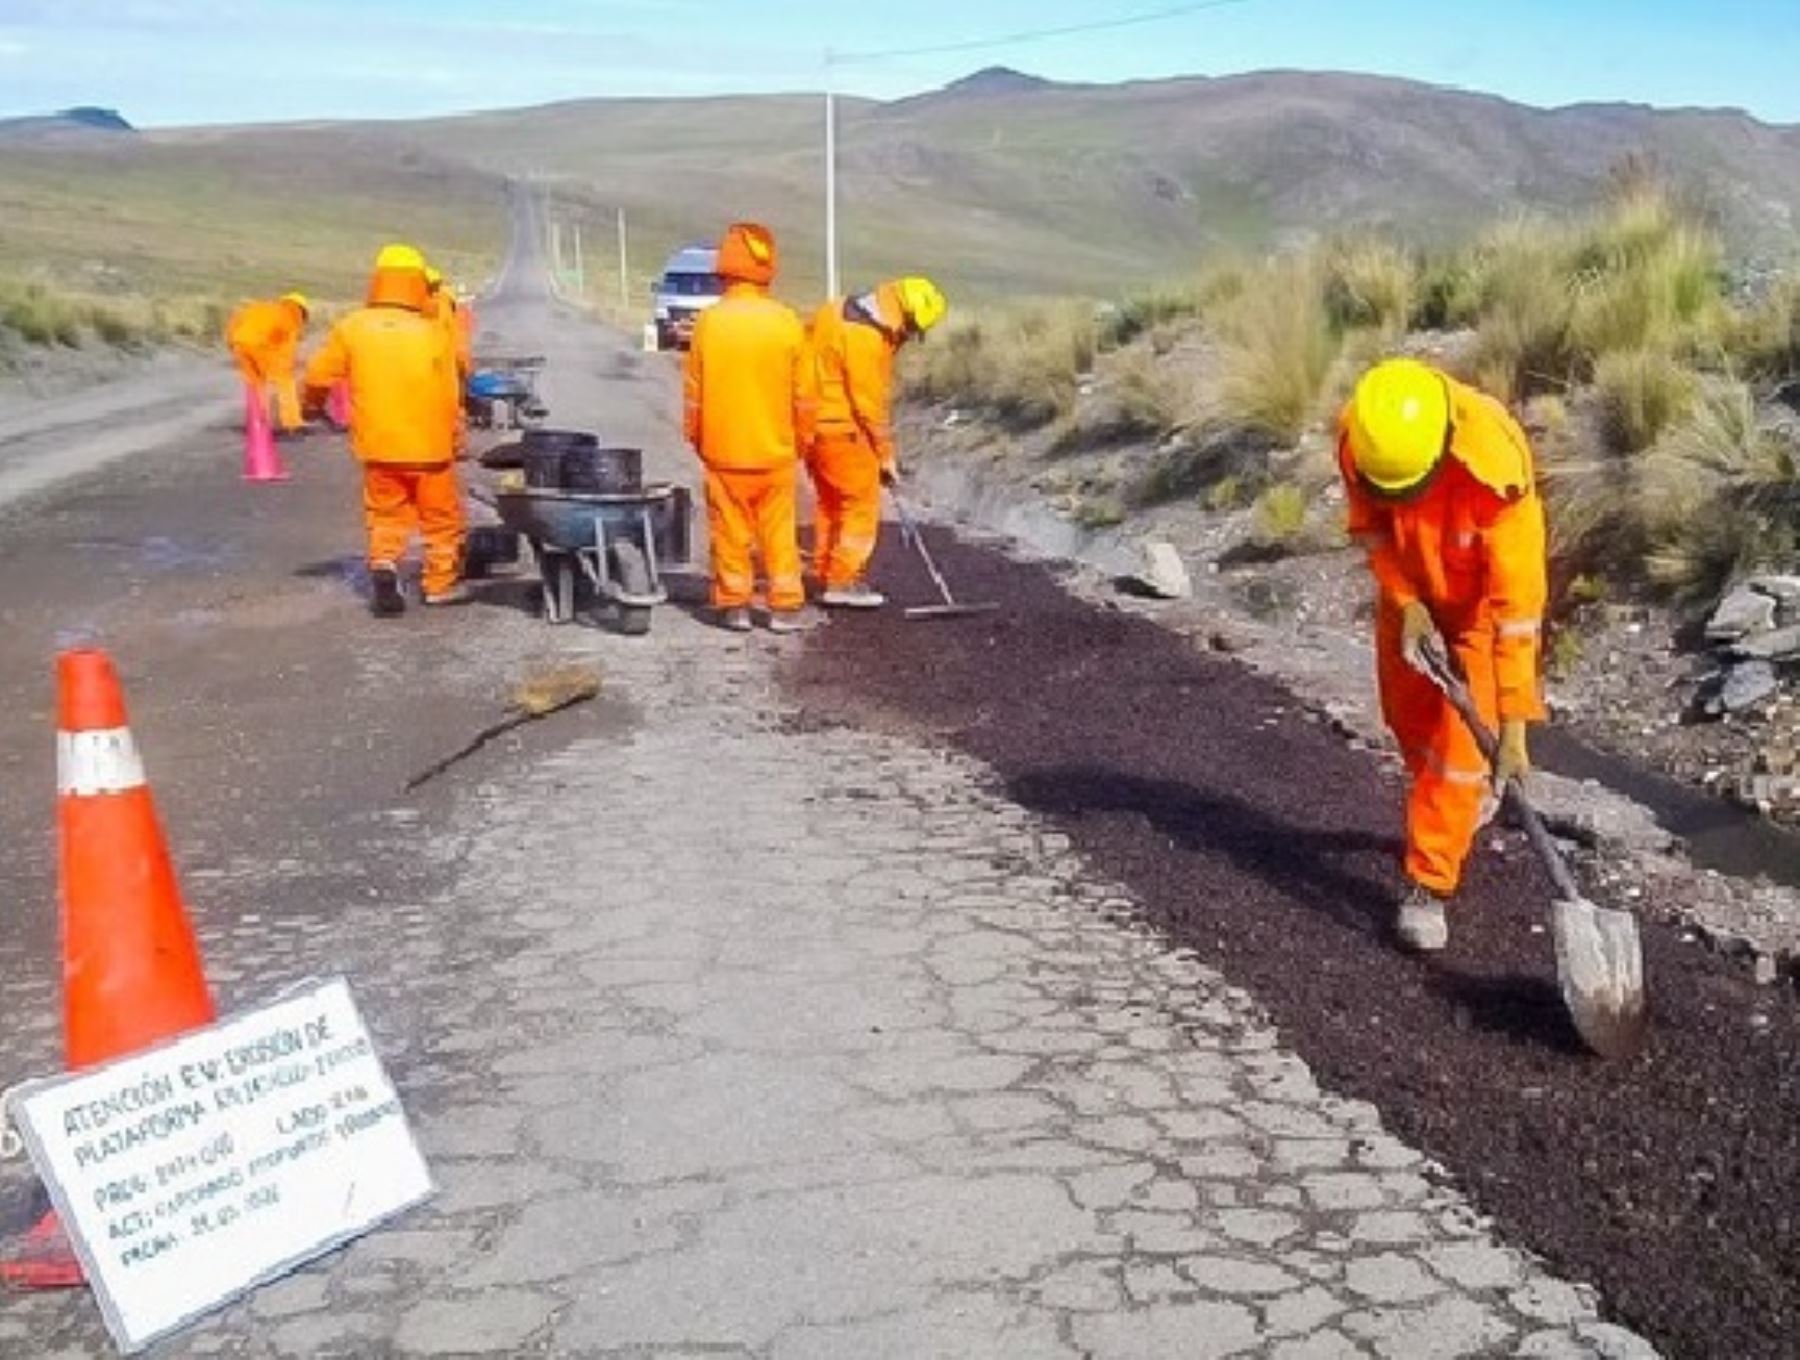 A fines de abril se iniciarán los trabajos de mantenimiento en 121 kilómetros de vía Los Libertadores que une a Ica, Huancavelica y Ayacucho, anunció el MTC. ANDINA/Difusión